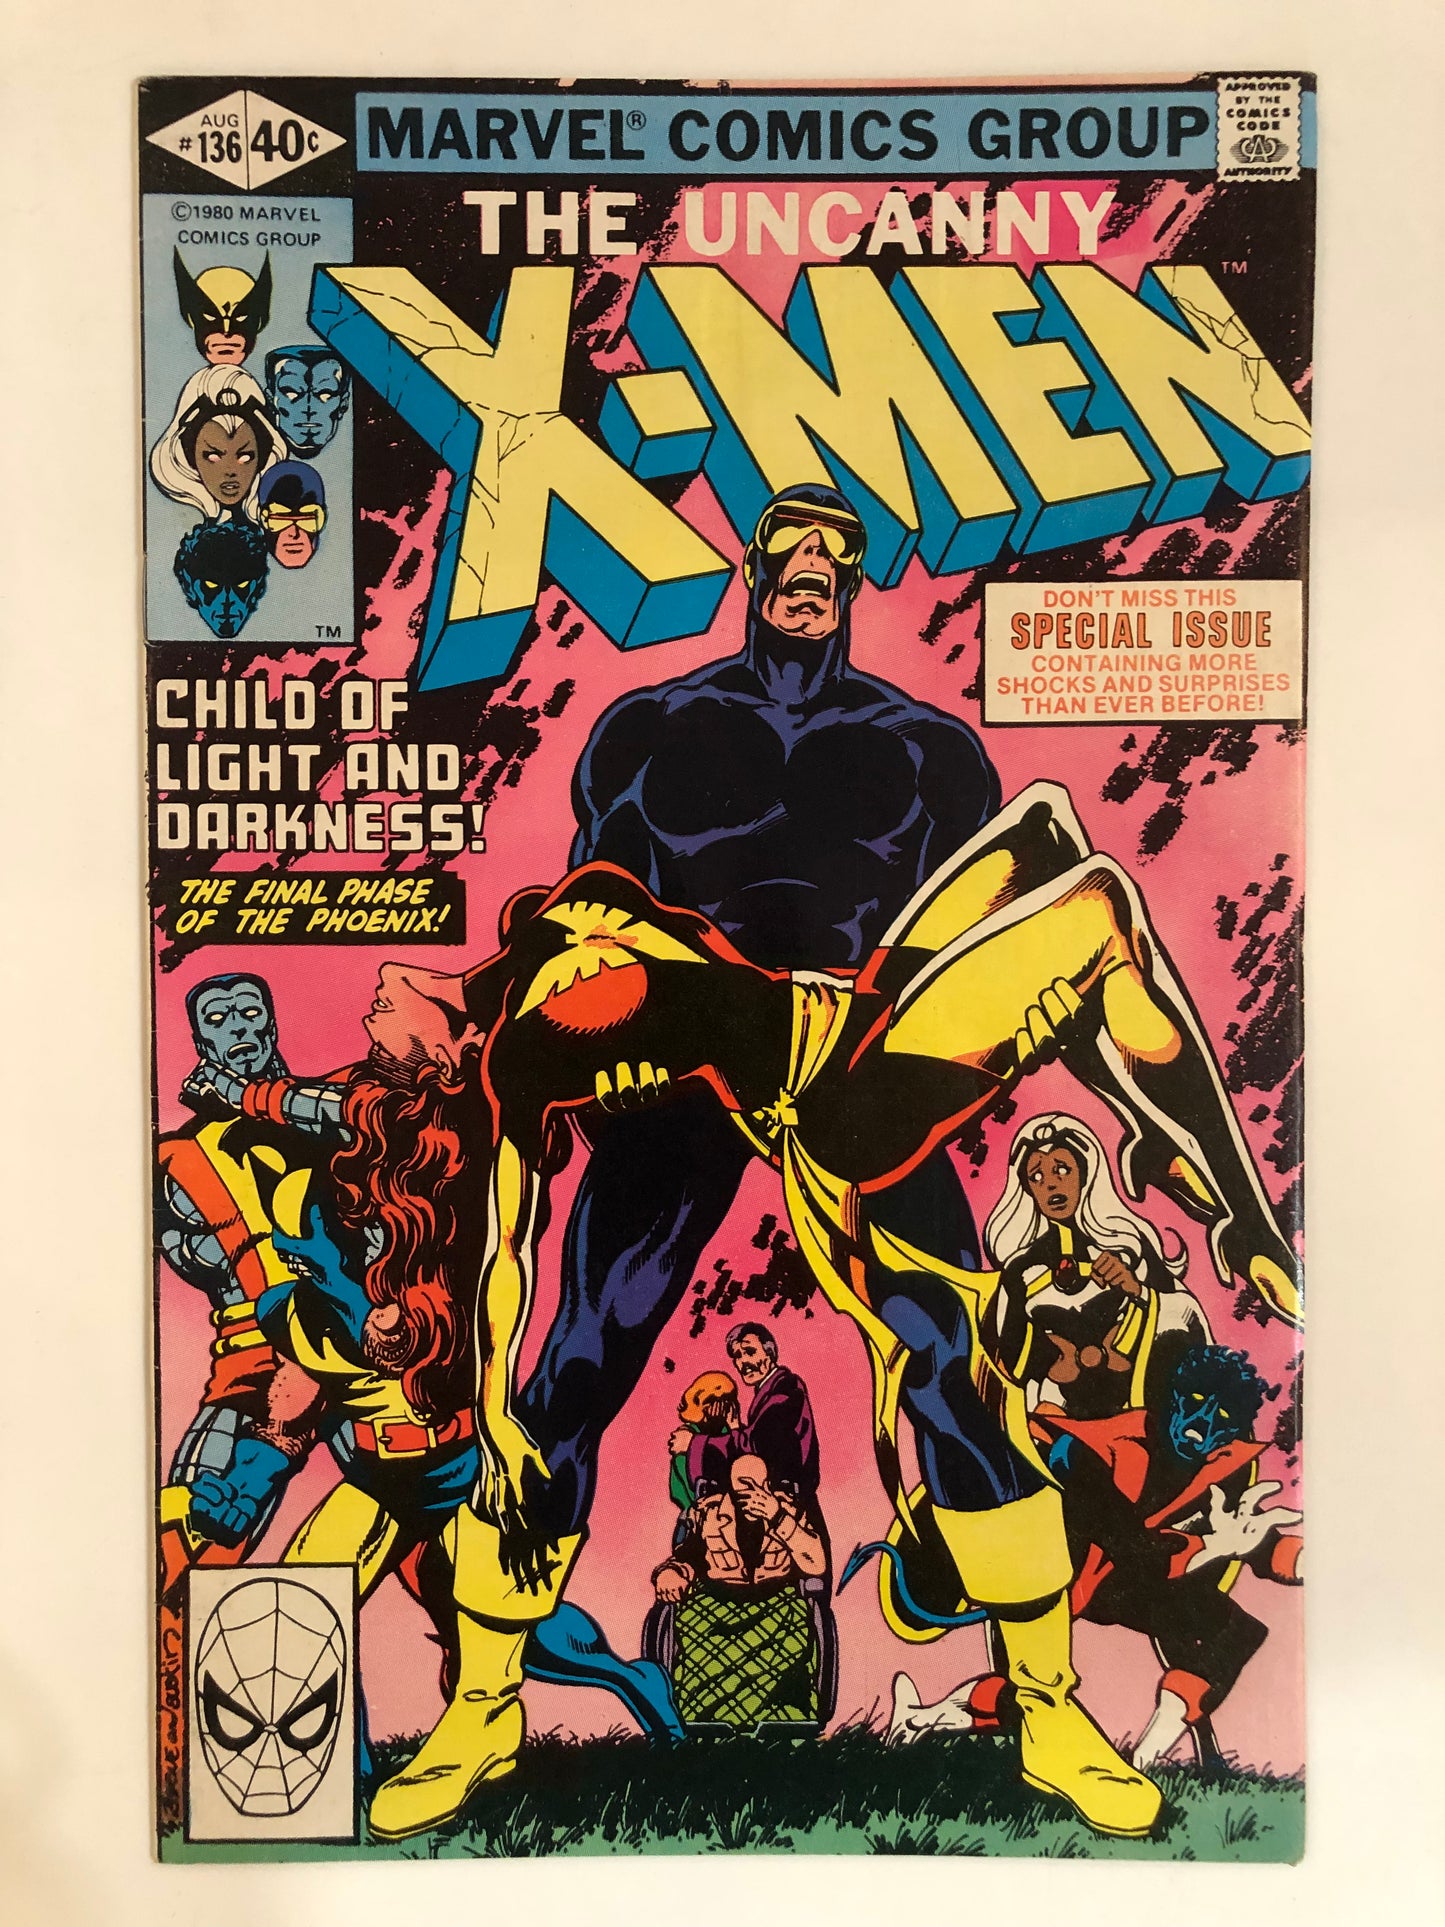 The Uncanny X-Men #136